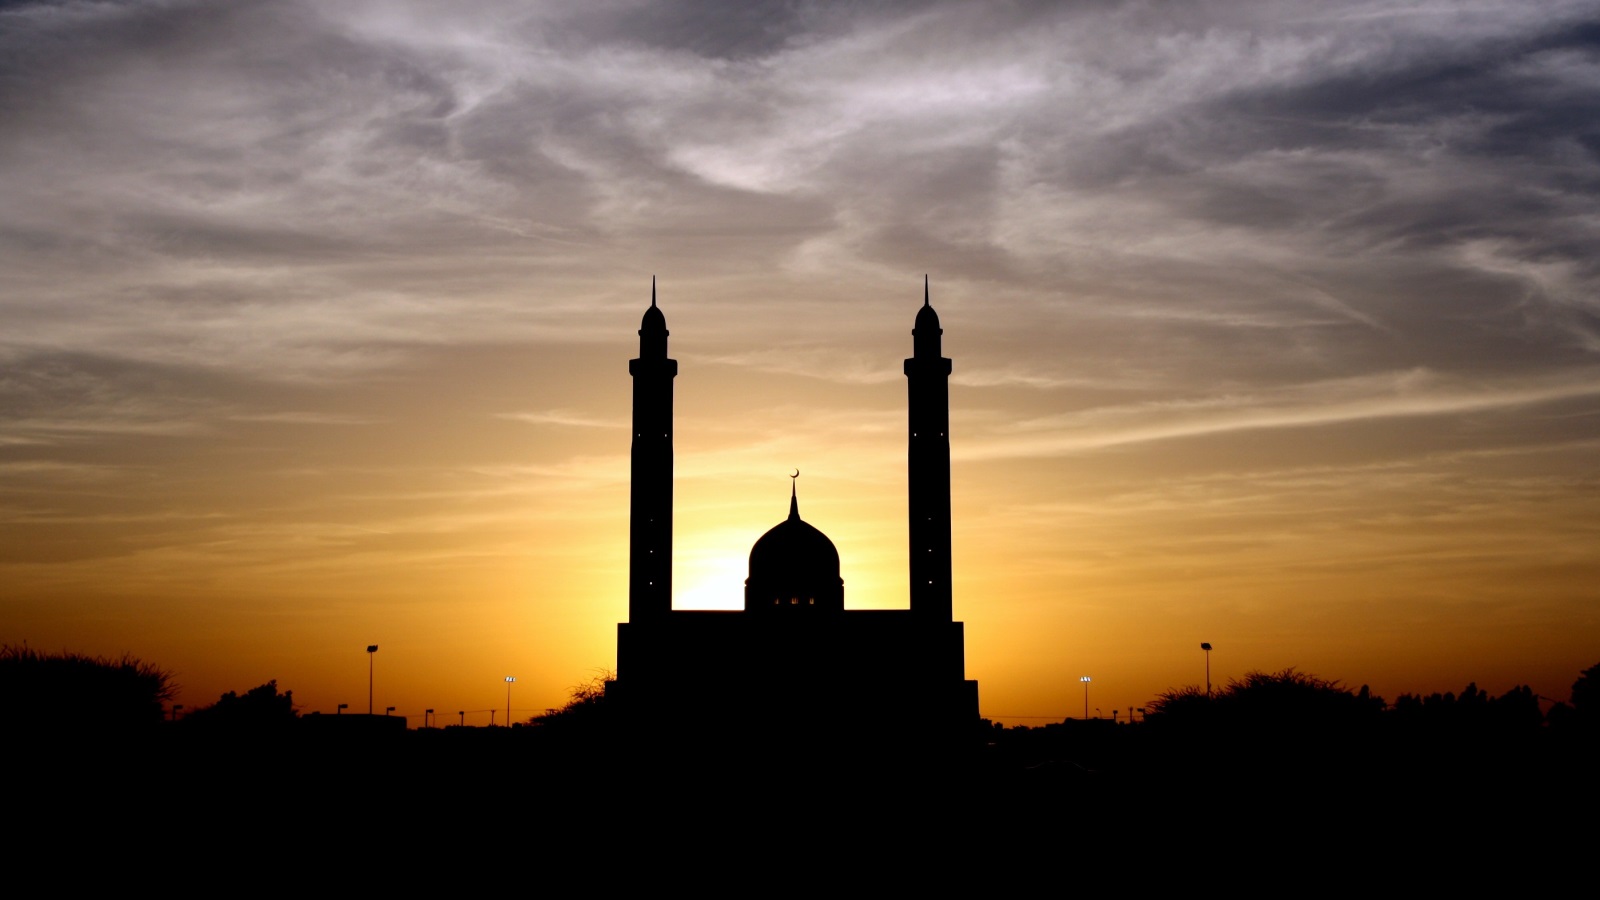 يجدر بنا معرفة أن المسجد لفظة آرامية تعود إلى القرن الخامس قبل الميلاد، تستعمل للدلالة على كل موضع يتعبد فيه